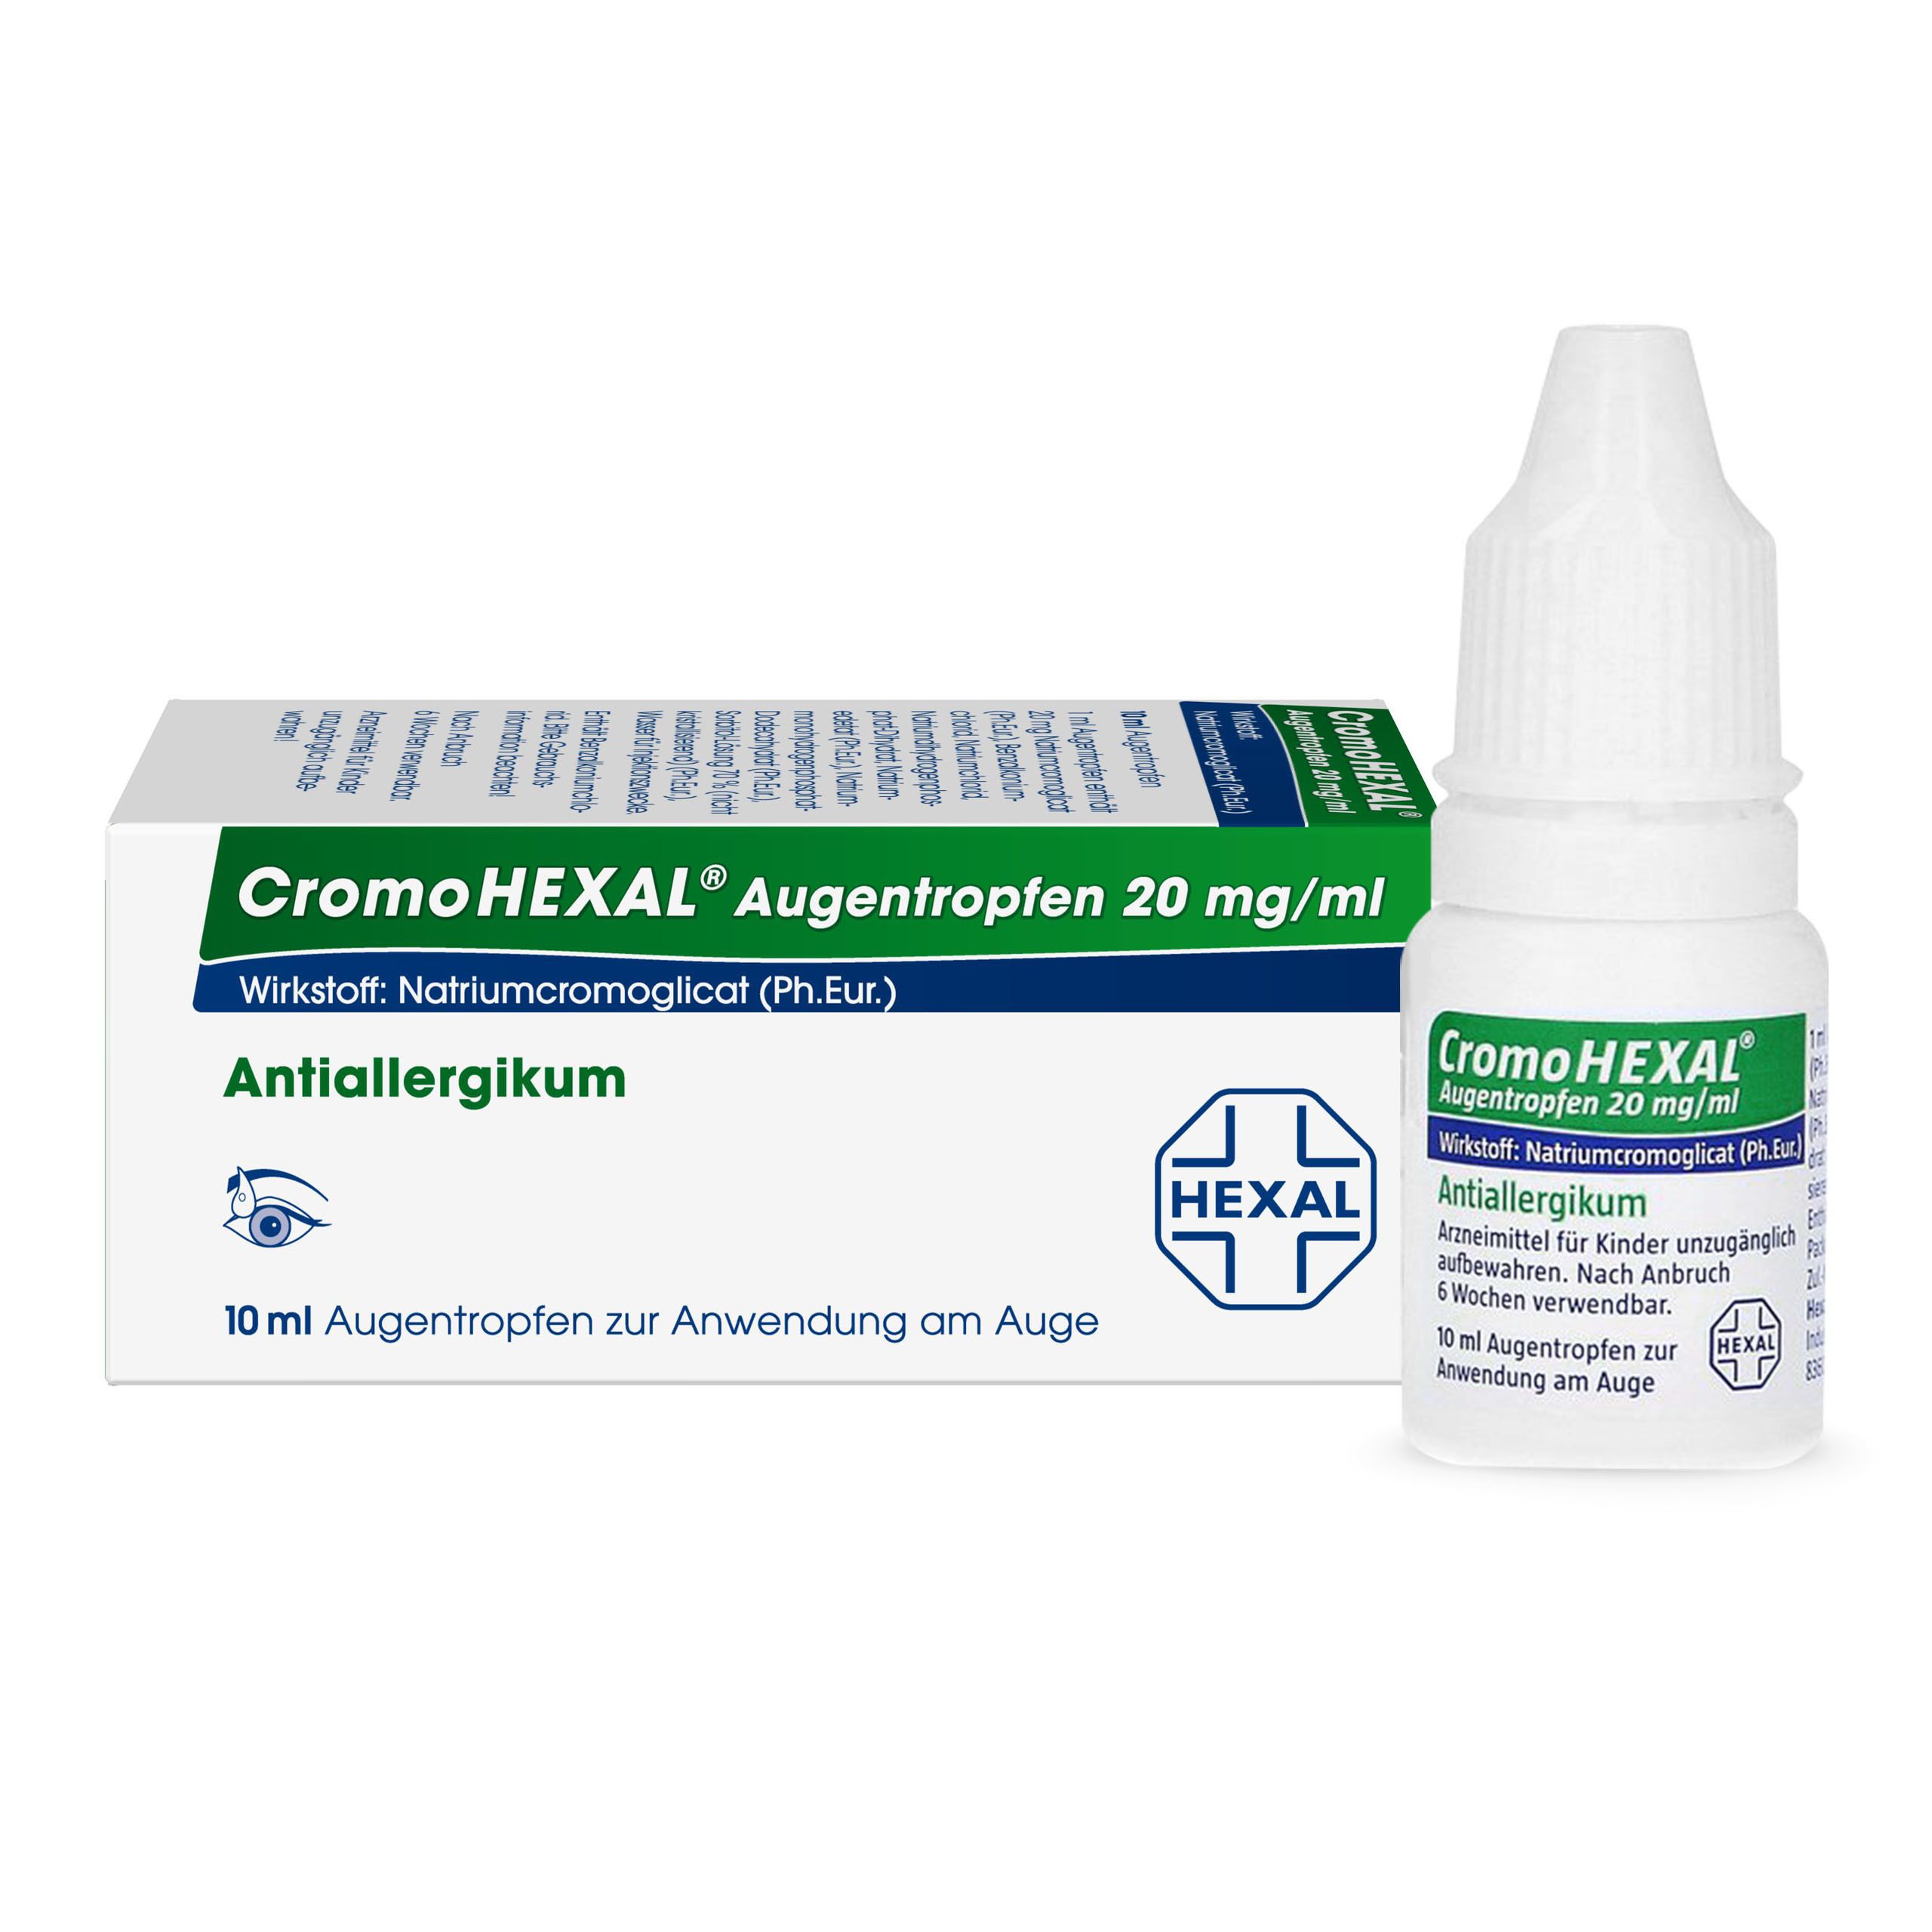 CromoHEXAL® Augentropfen 20 mg/ml